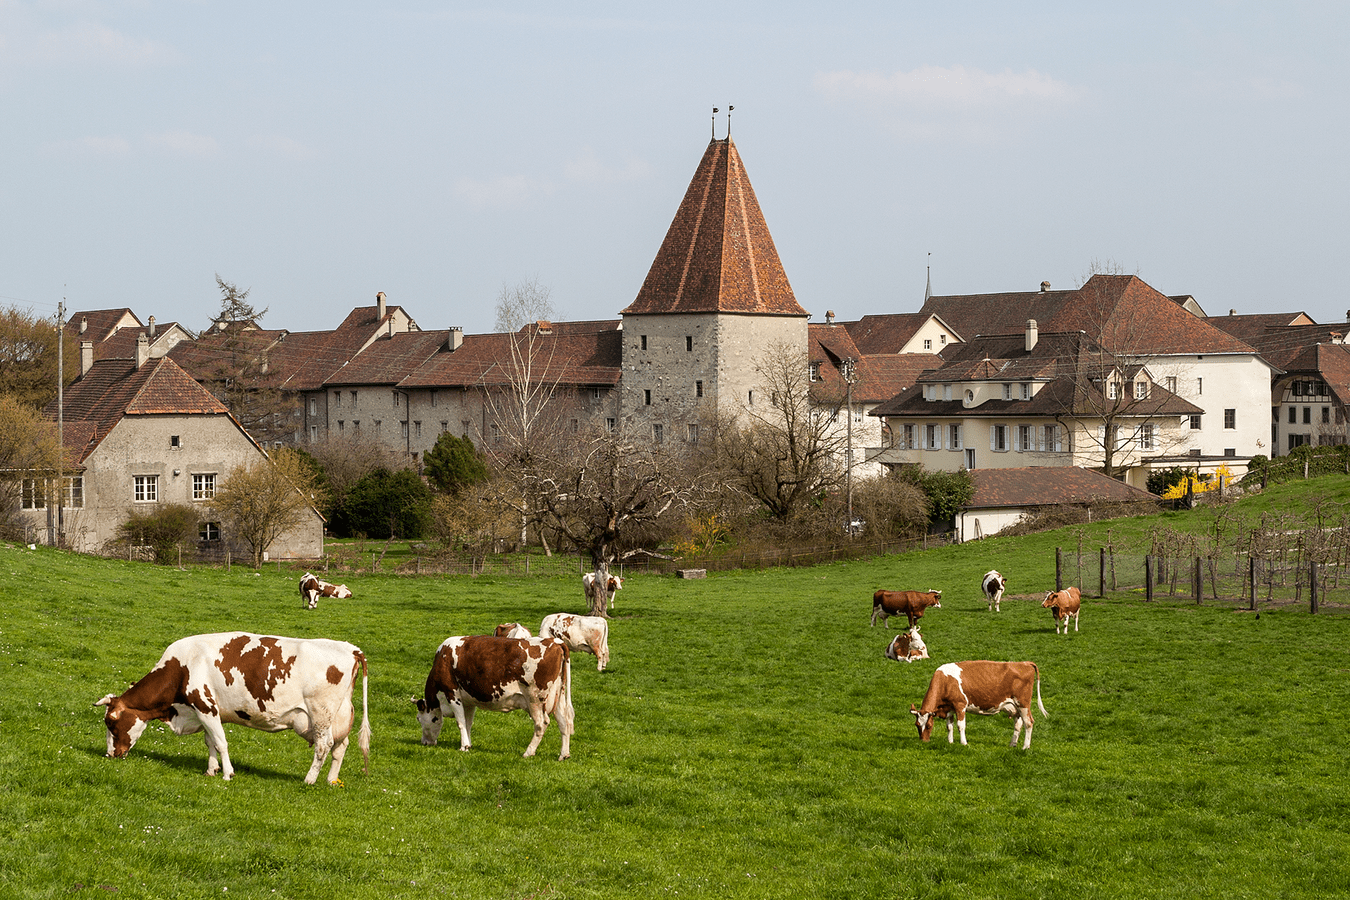 Wiedlisbach mit dem Wohnturm